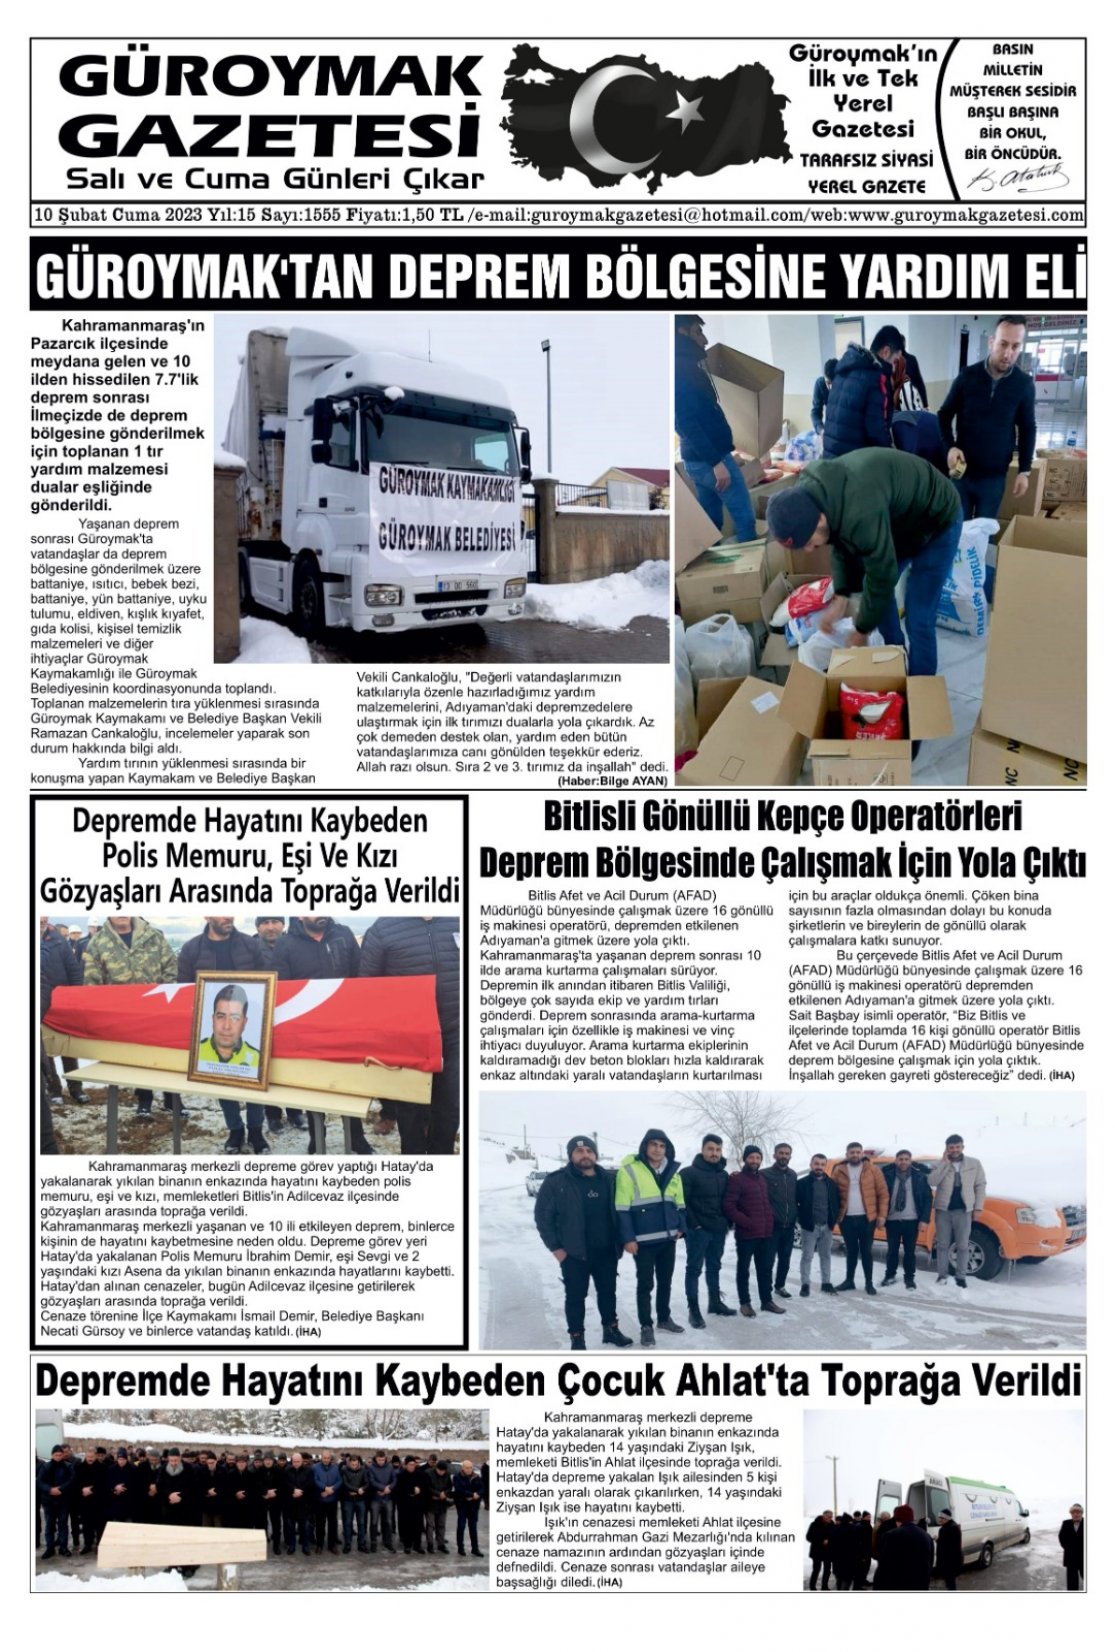 Güroymak Gazetesi IMG-20230210-WA0008.jpg Sayılı Gazete Küpürü